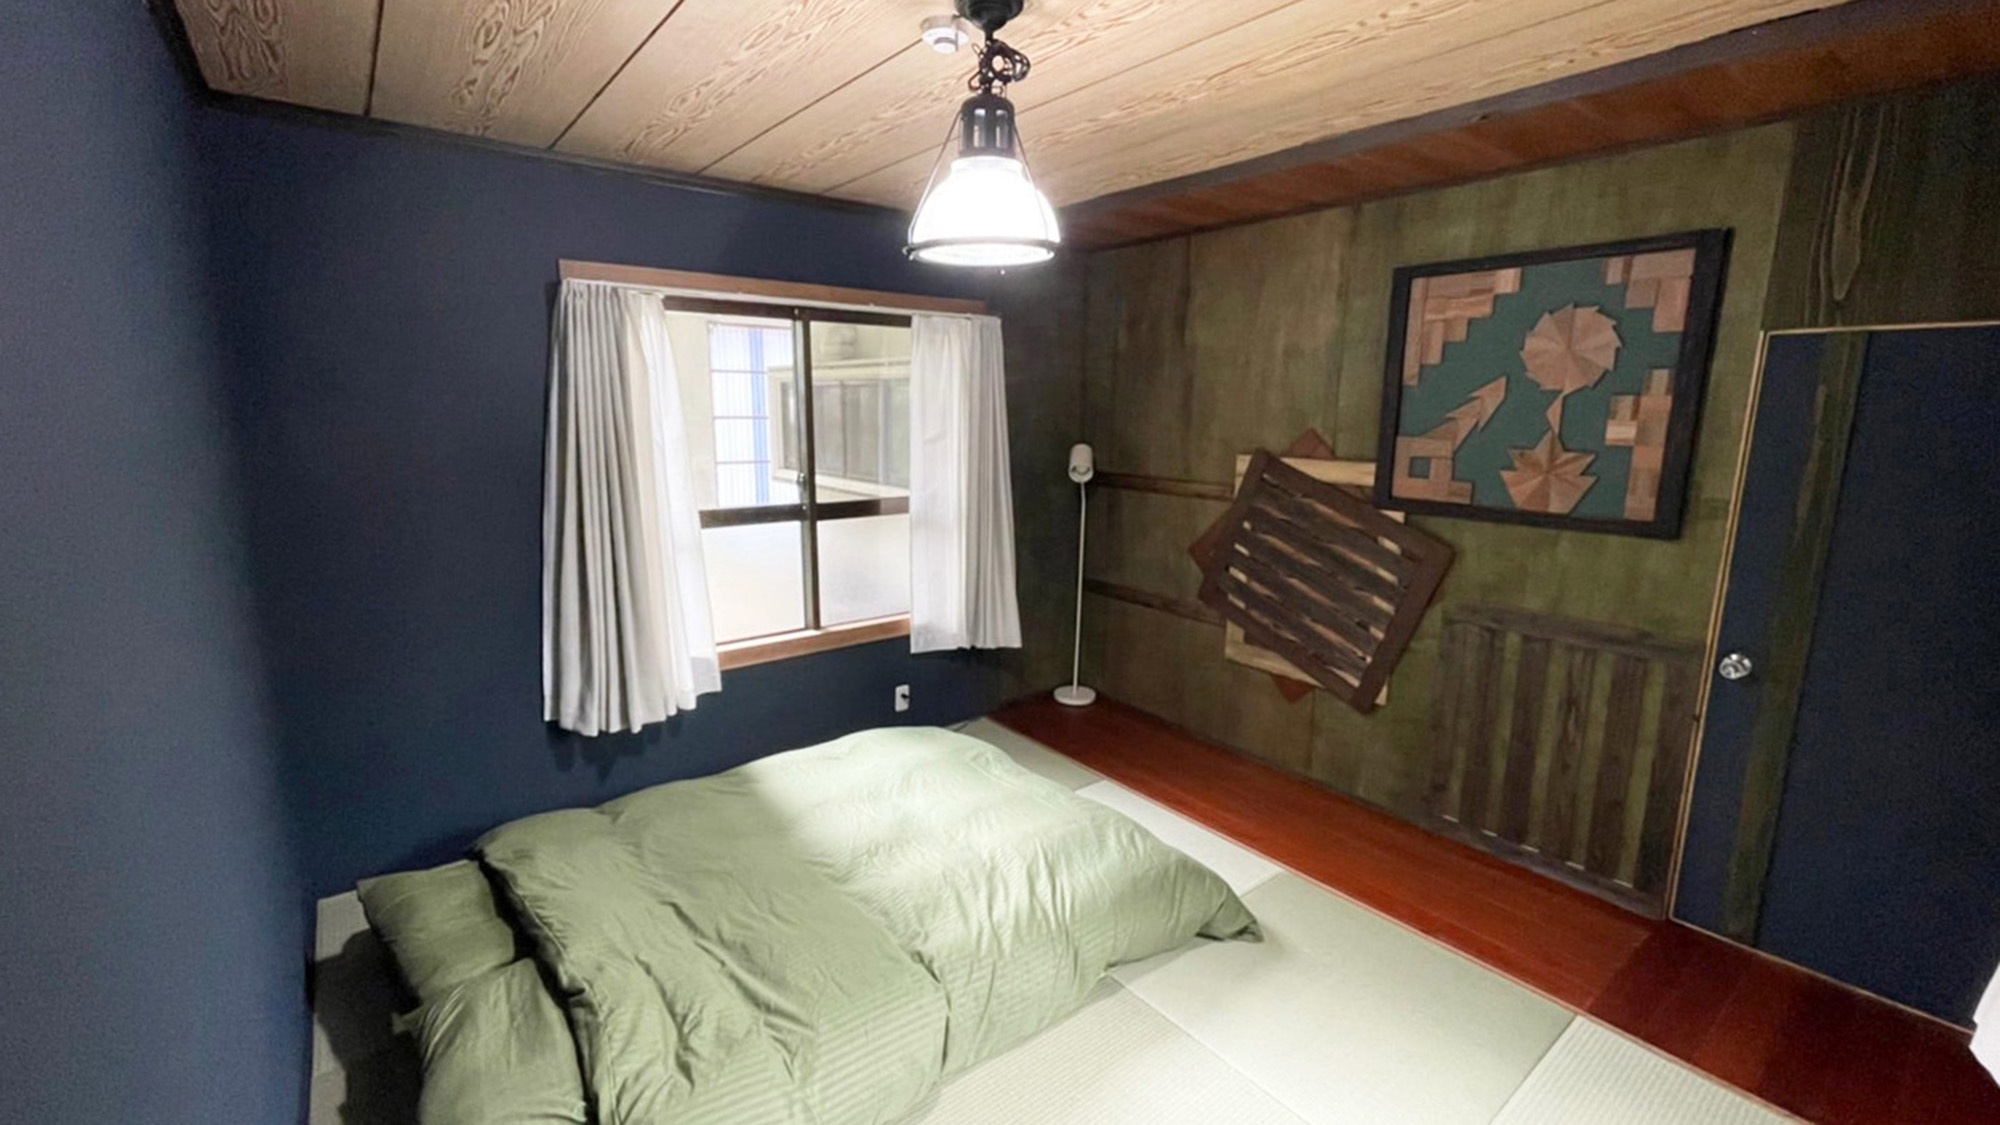 ・【寝室】沖縄らしさを残した琉球畳のくつろぎ空間